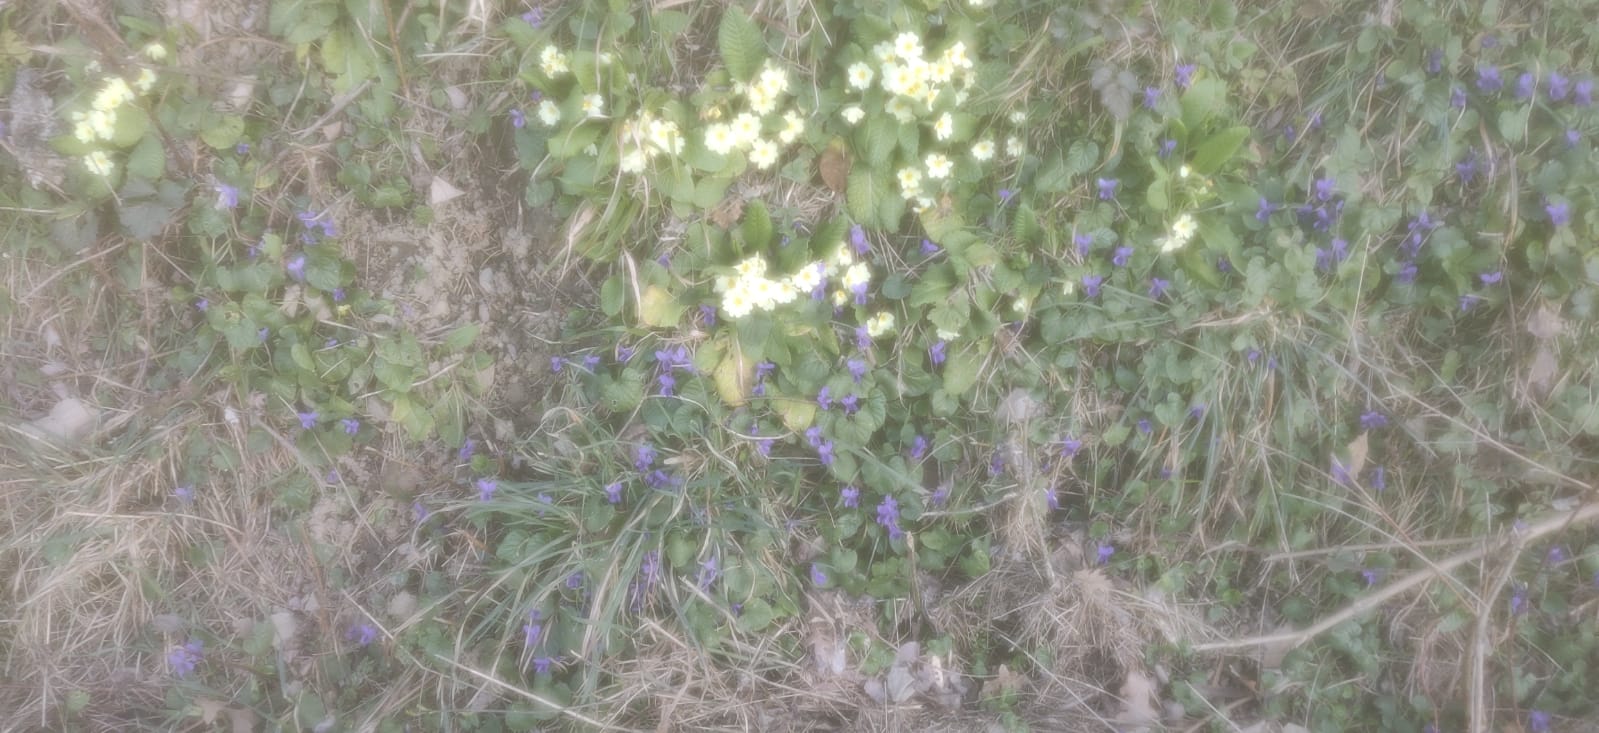 Violette e Primule 